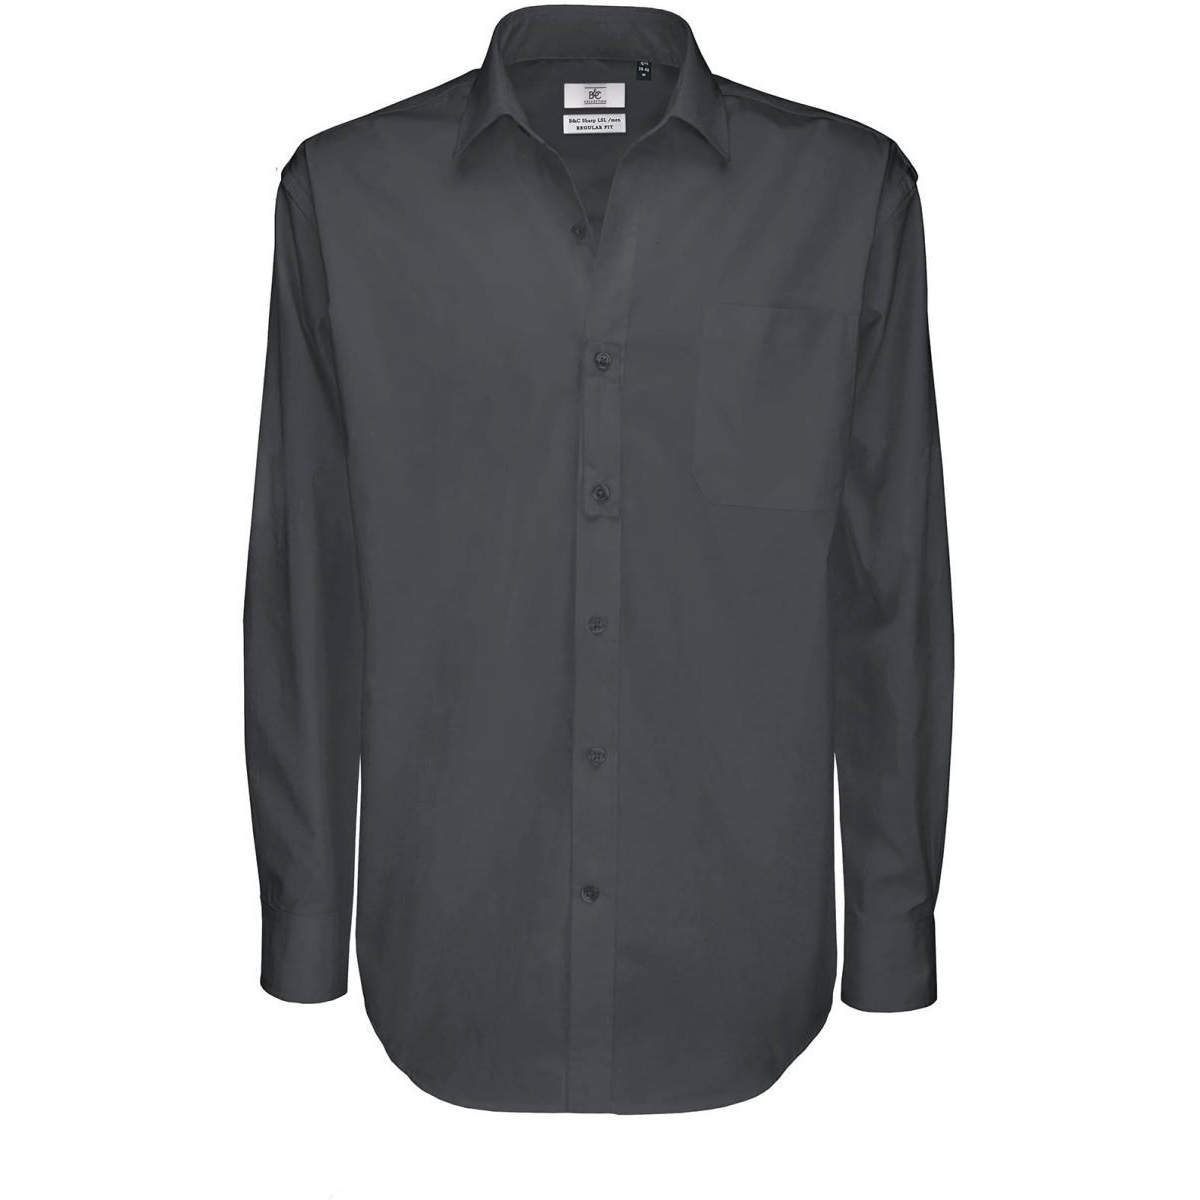 Pánská keprová košile B&C Sharp s dlouhým rukávem - tmavě šedá, S